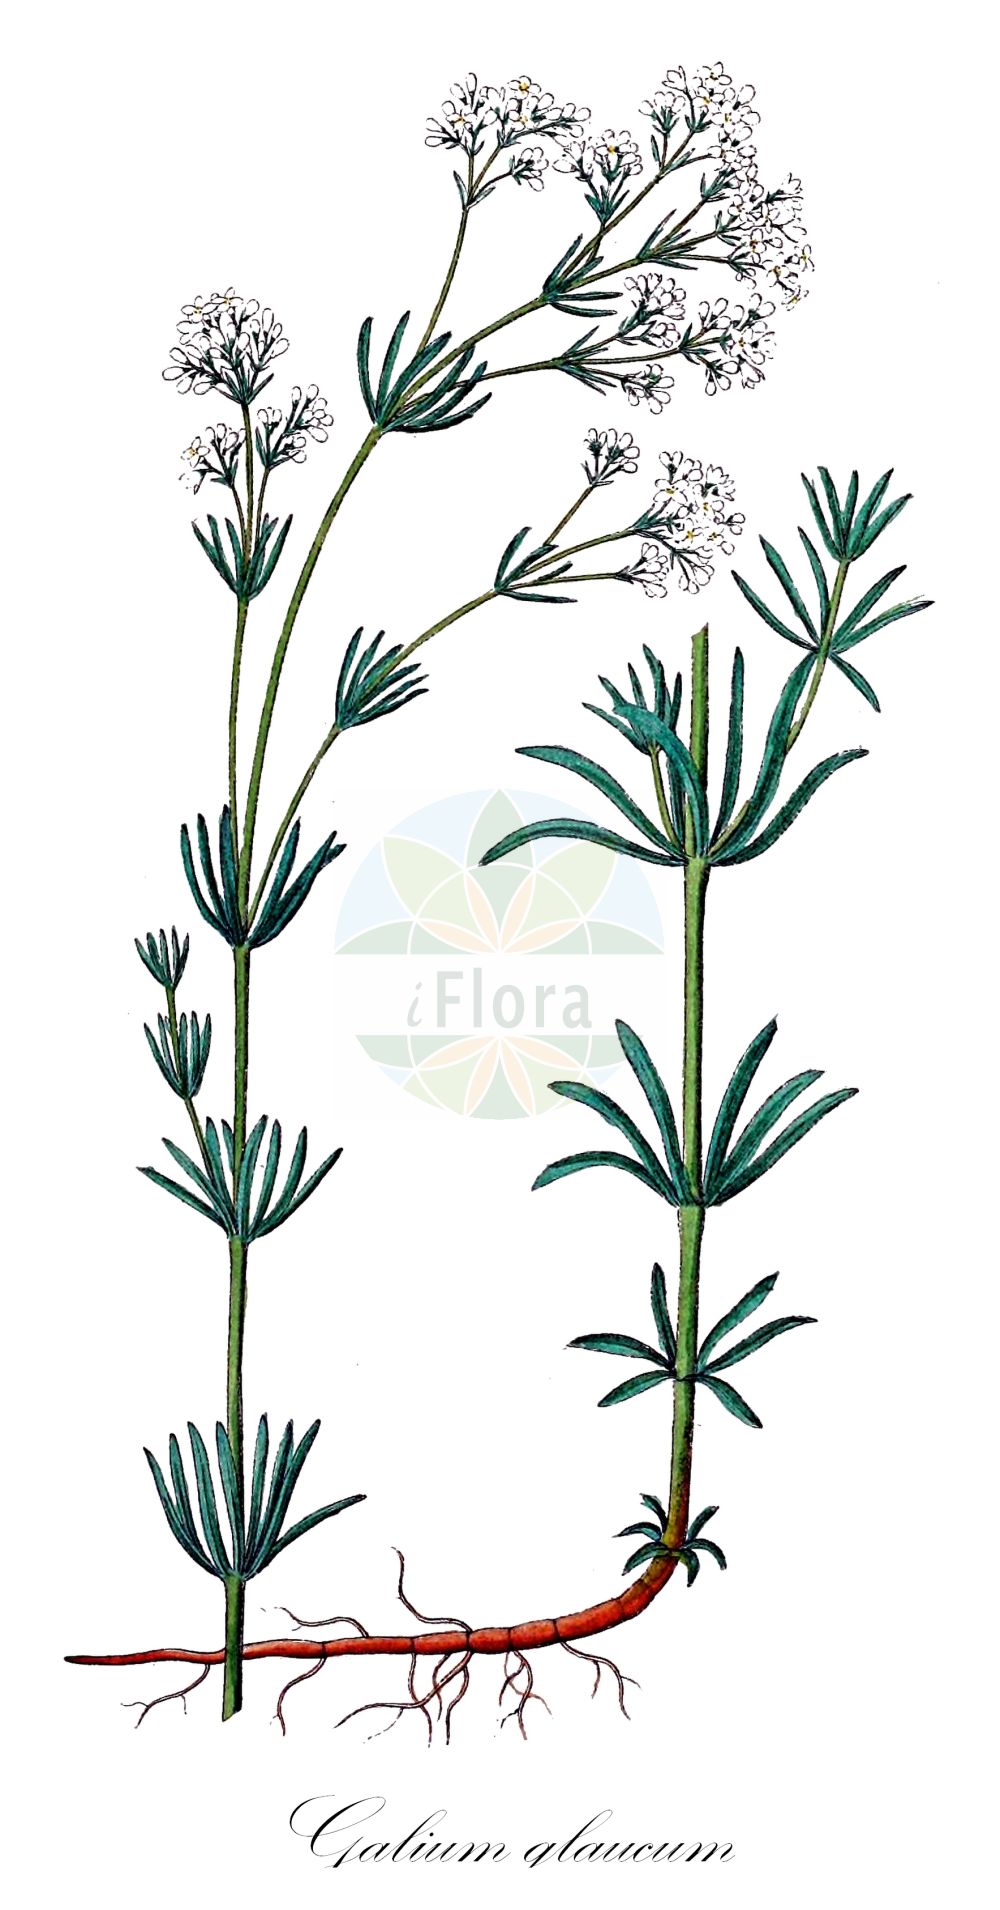 Historische Abbildung von Galium glaucum (Blaugrünes Labkraut - Glaucous Bedstraw). Das Bild zeigt Blatt, Bluete, Frucht und Same. ---- Historical Drawing of Galium glaucum (Blaugrünes Labkraut - Glaucous Bedstraw). The image is showing leaf, flower, fruit and seed.(Galium glaucum,Blaugrünes Labkraut,Glaucous Bedstraw,Asperula campanulata,Asperula galioides,Asperula glauca,Asperula glauca (L.) Besser,Galium campanulatum,Galium glaucum,Galium glaucum subsp. tyracium,Blaugruenes Labkraut,Glaucous Bedstraw,Waxy Bedstraw,Galium,Labkraut,Bedstraw,Rubiaceae,Rötegewächse,Bedstraw family,Blatt,Bluete,Frucht,Same,leaf,flower,fruit,seed,Dietrich (1833-1844))